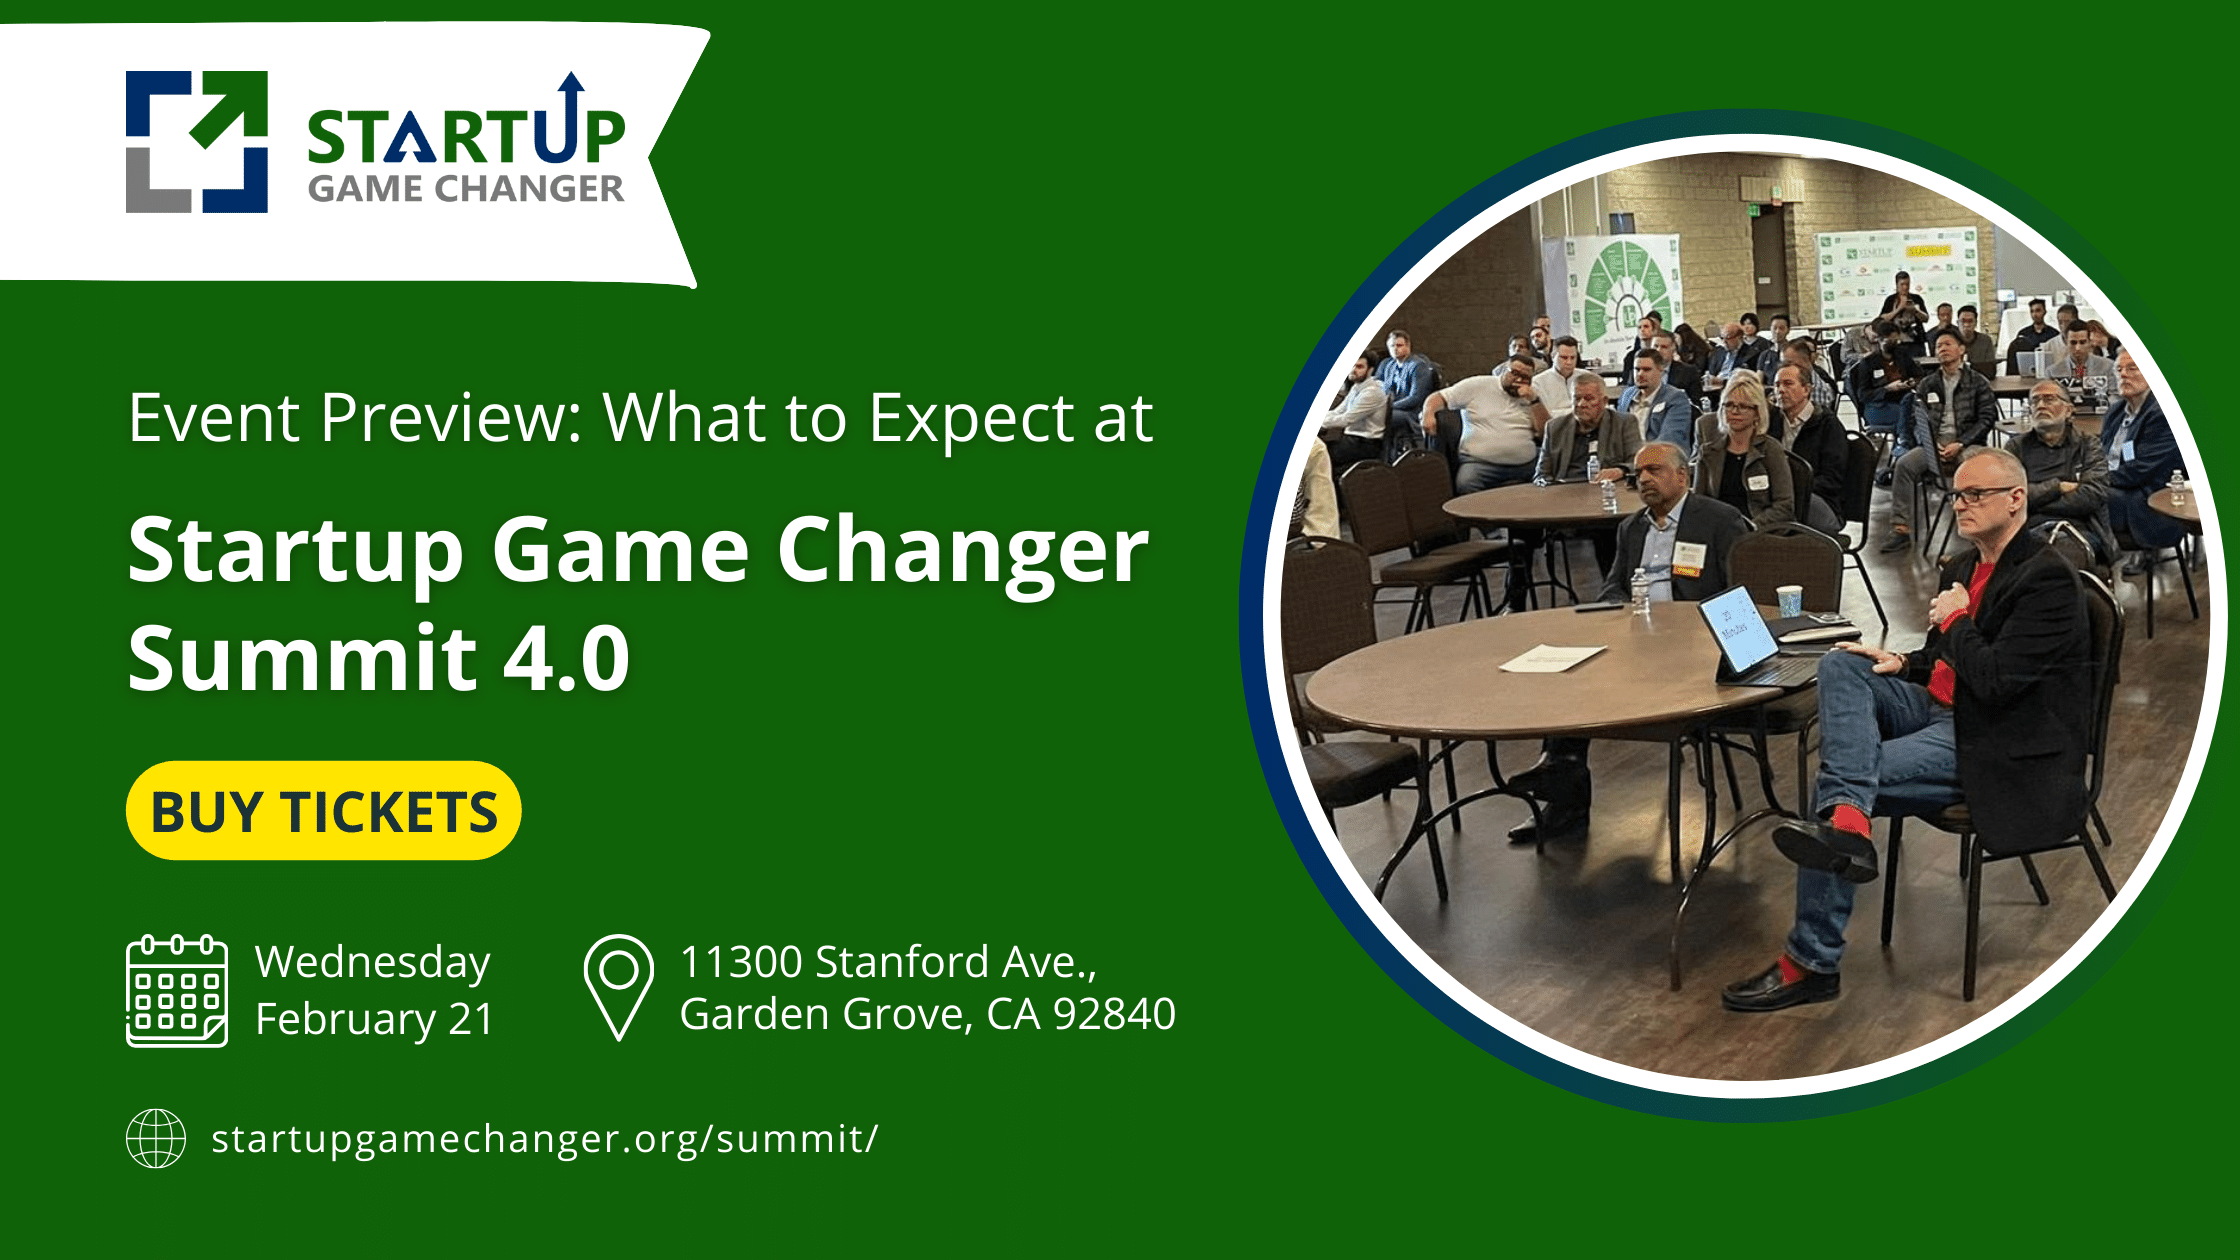 Startup Game Changer Summit 4.0